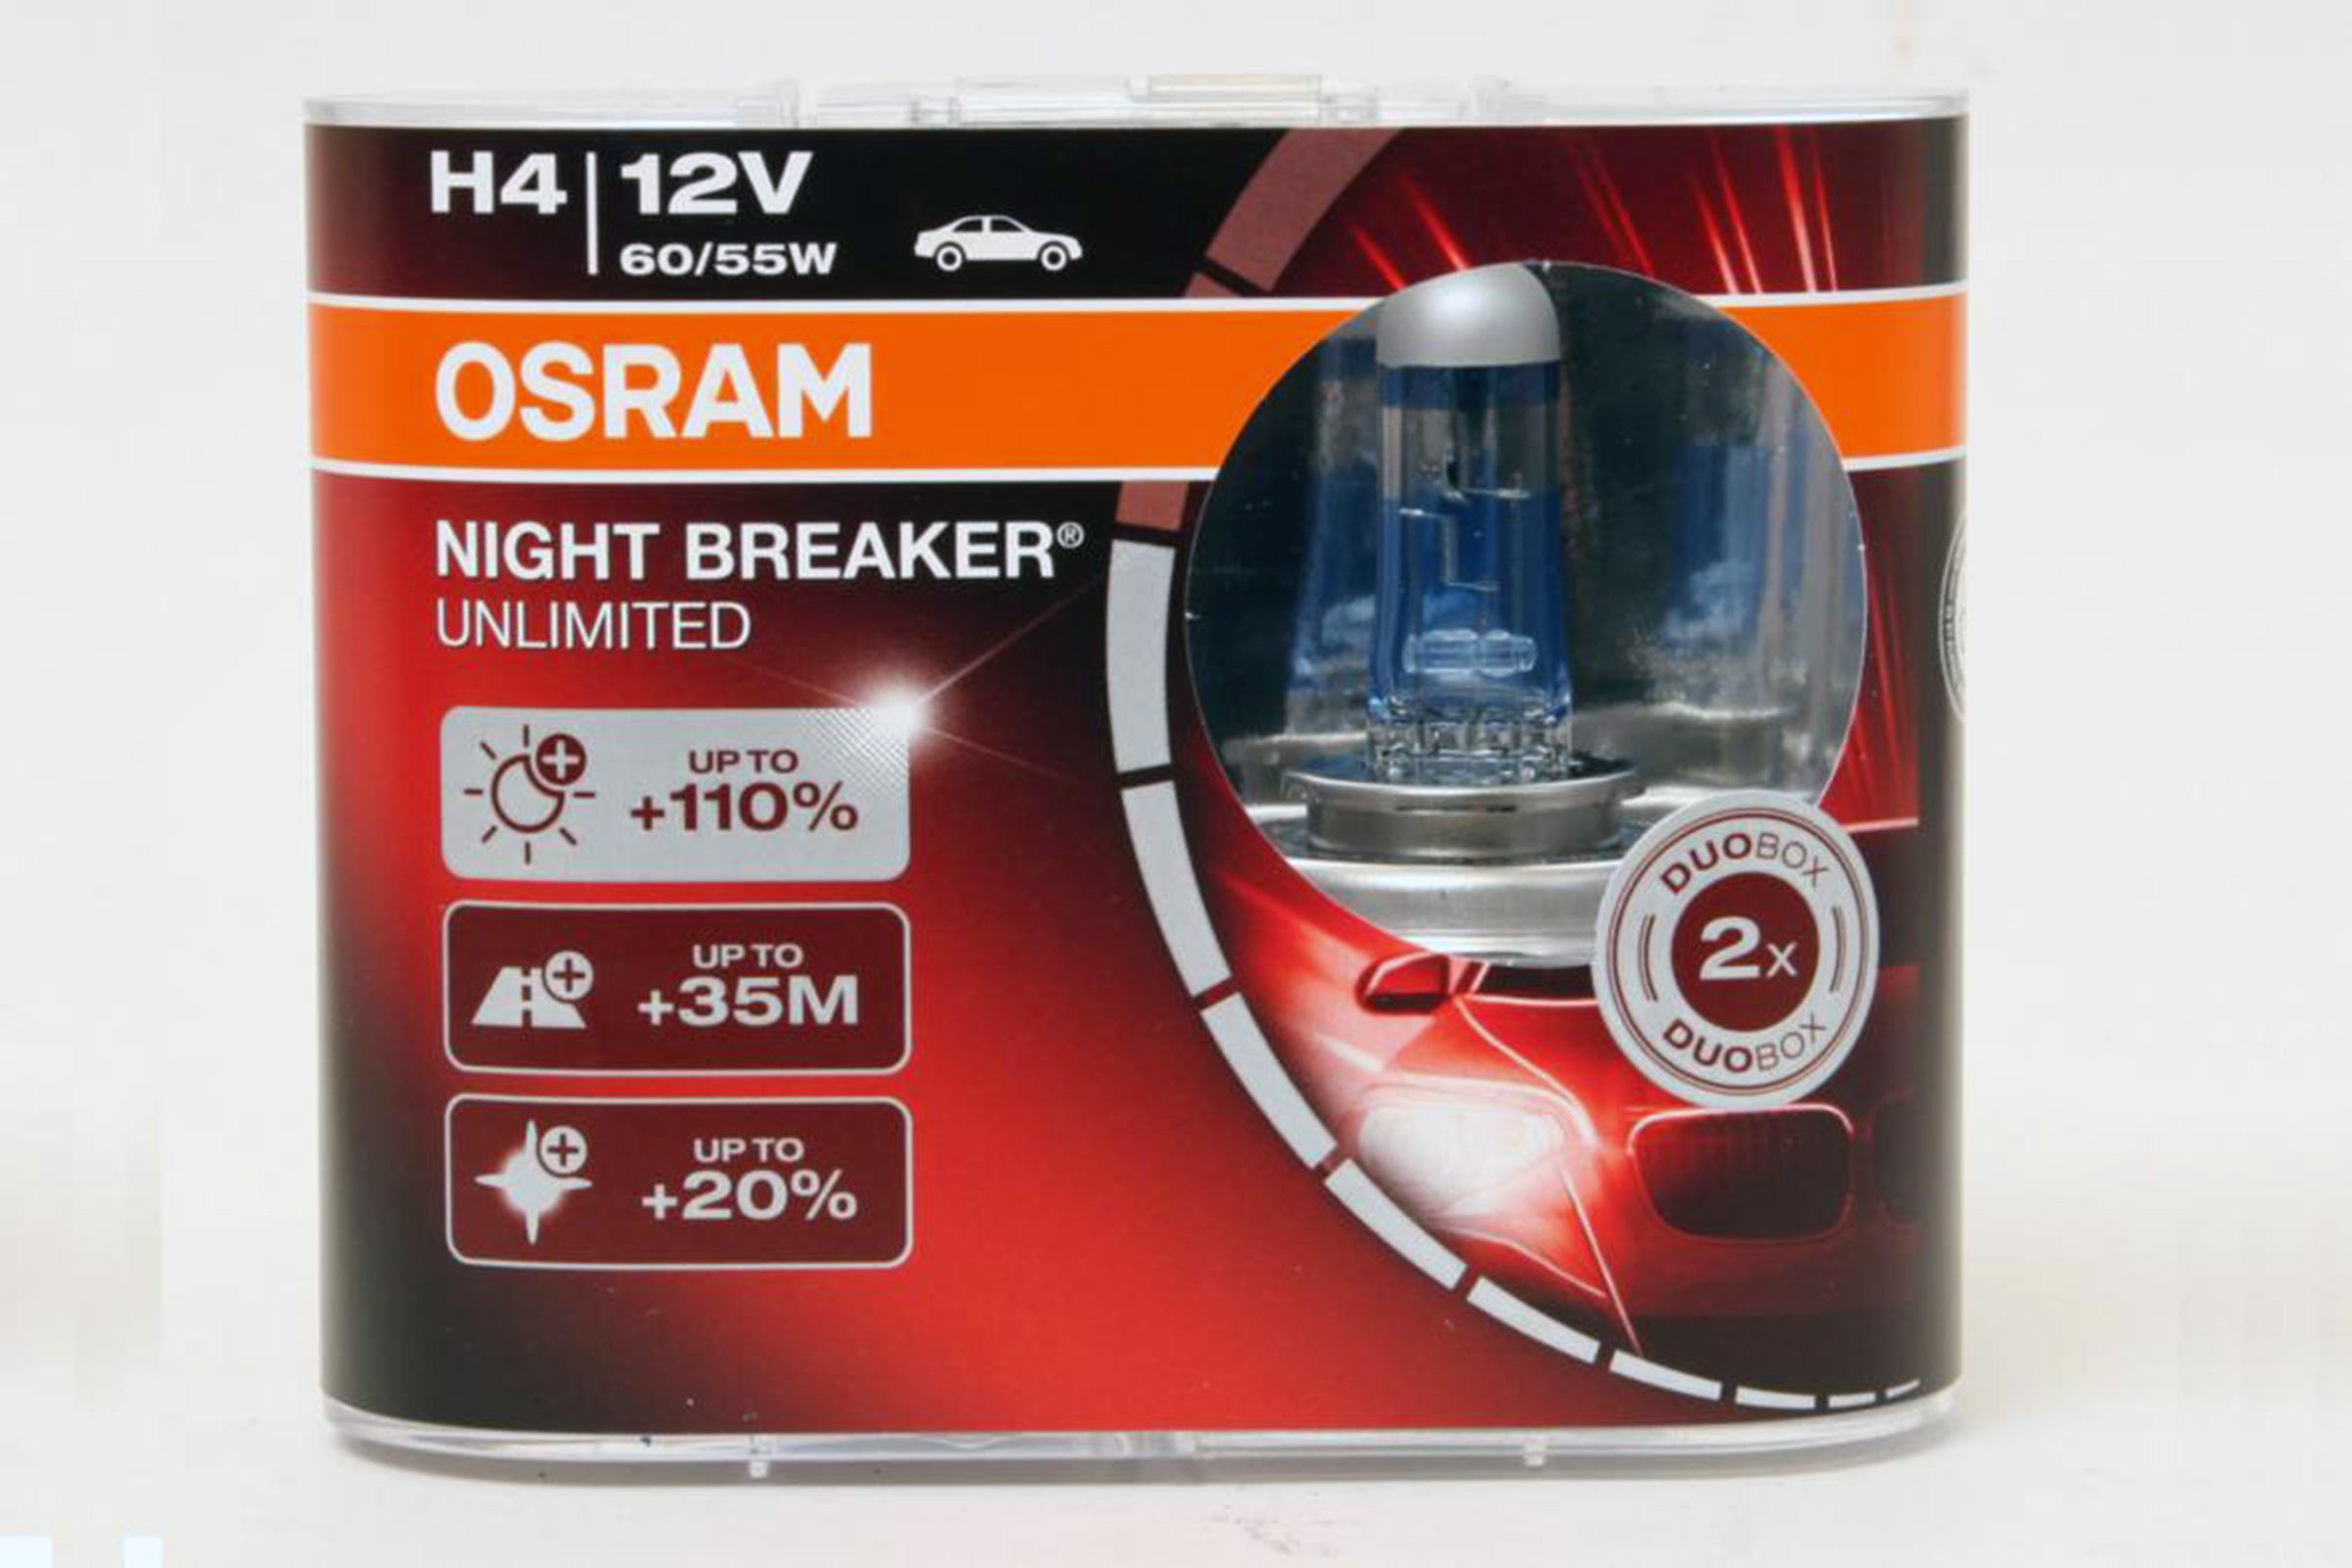 OSRAM NIGHT BREAKER +200% vs BOSCH Gigalight Plus 120 